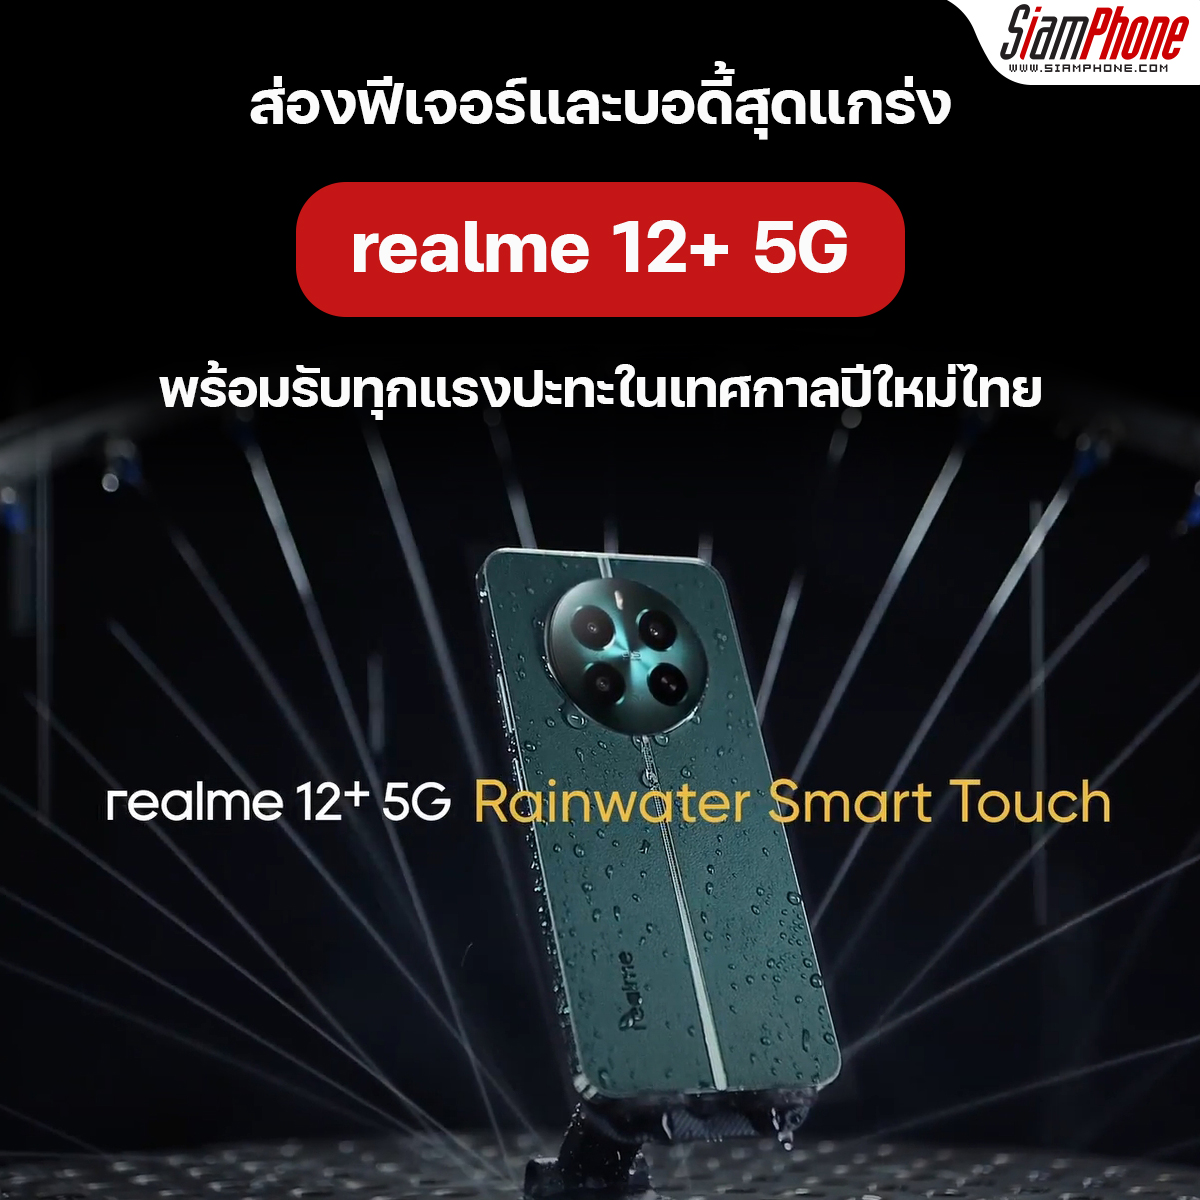 ส่องฟีเจอร์ realme 12+ 5G บอดี้สุดแกร่ง พร้อมรับทุกแรงปะทะในเทศกาลปีใหม่ไทย